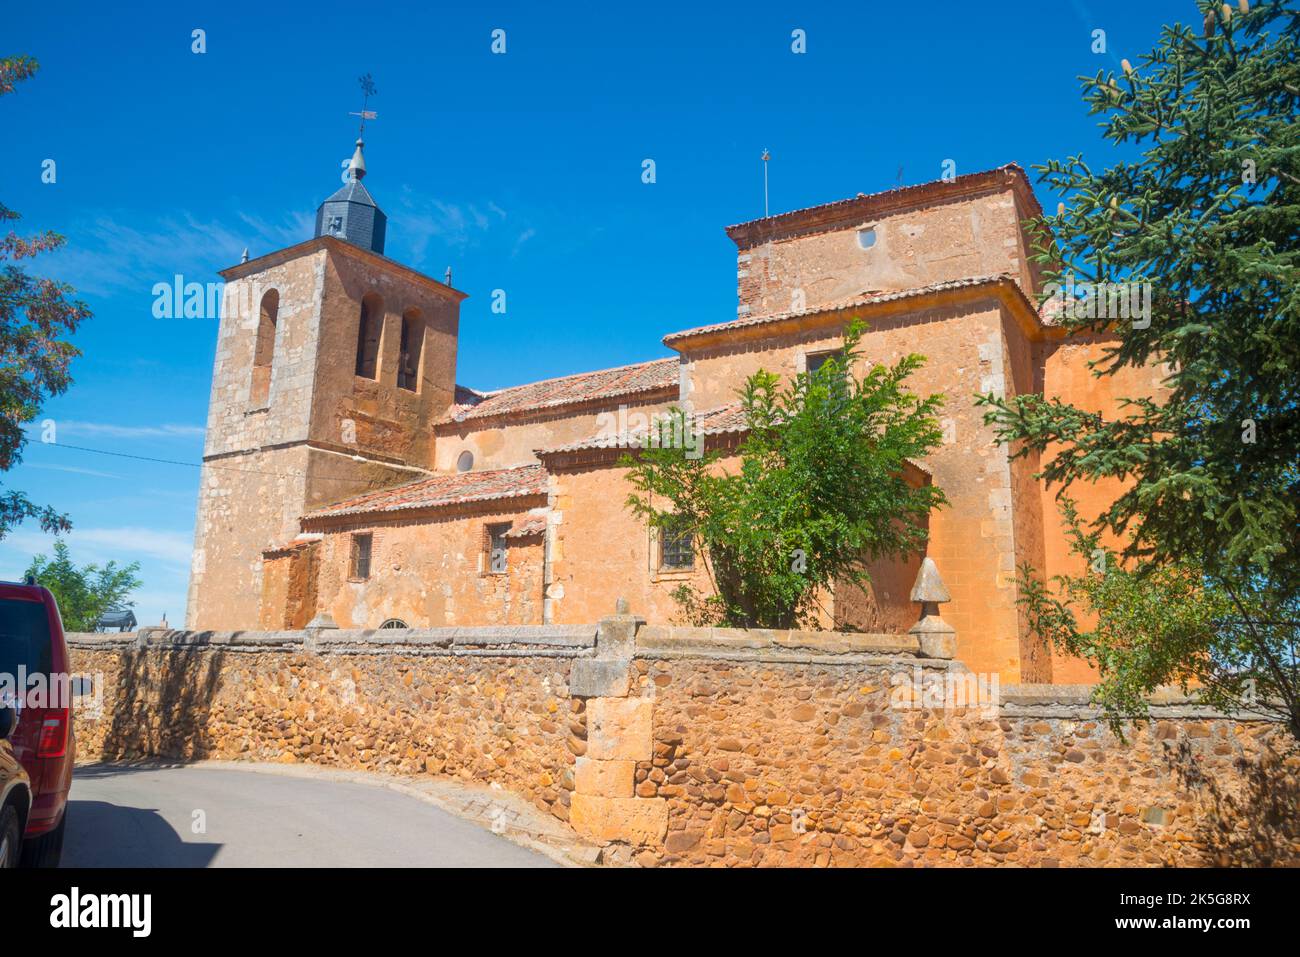 Facade of the church. Fresno de Cantespino, Segovia province, Castilla Leon, Spain. Stock Photo